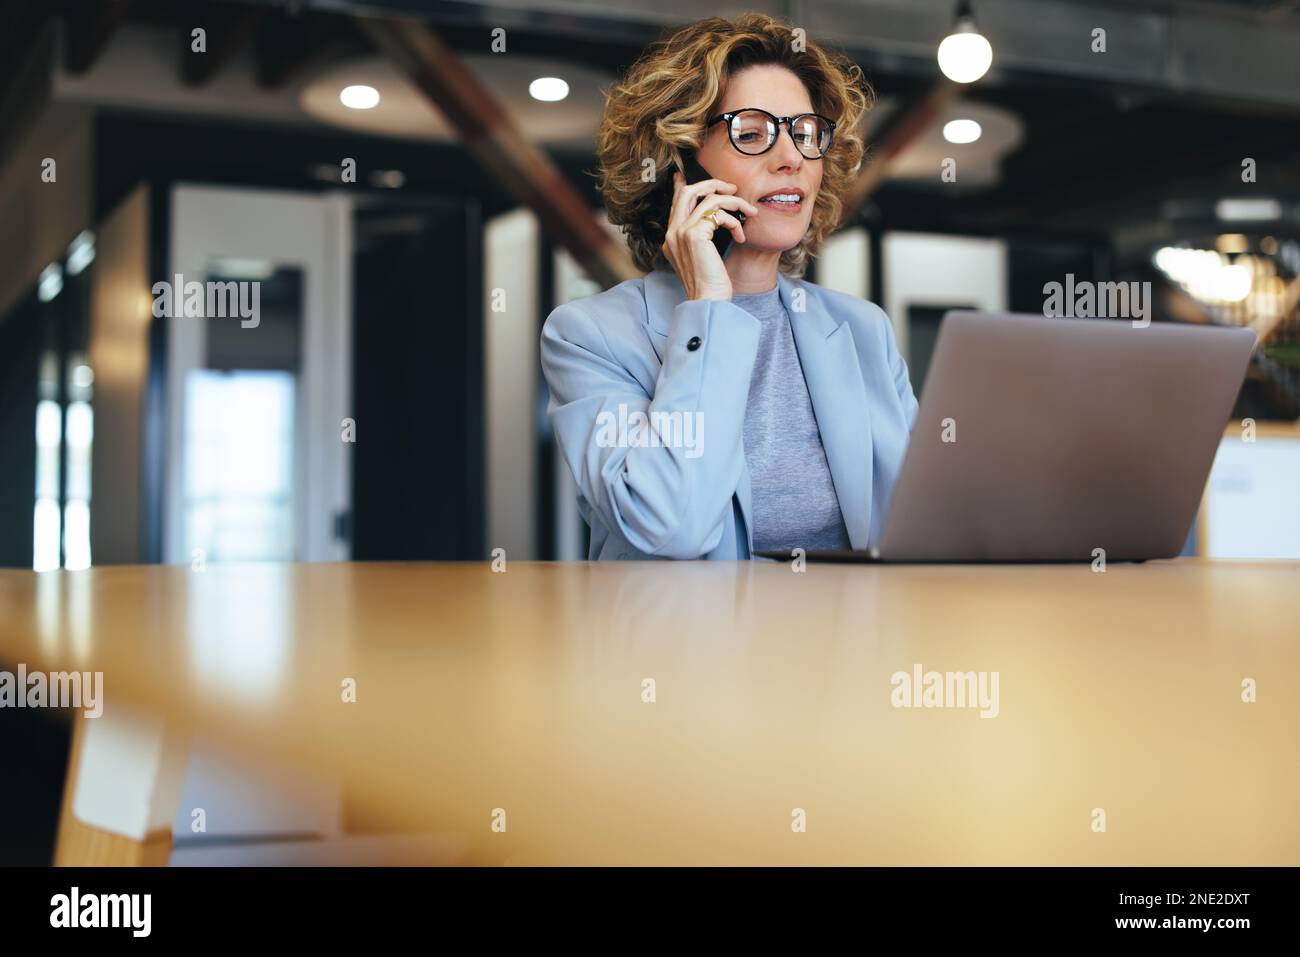 Appeler des clients sur un téléphone mobile. Femme d'affaires professionnelle regardant un écran d'ordinateur portable pendant un appel téléphonique. Femme d'affaires mature travaillant Banque D'Images